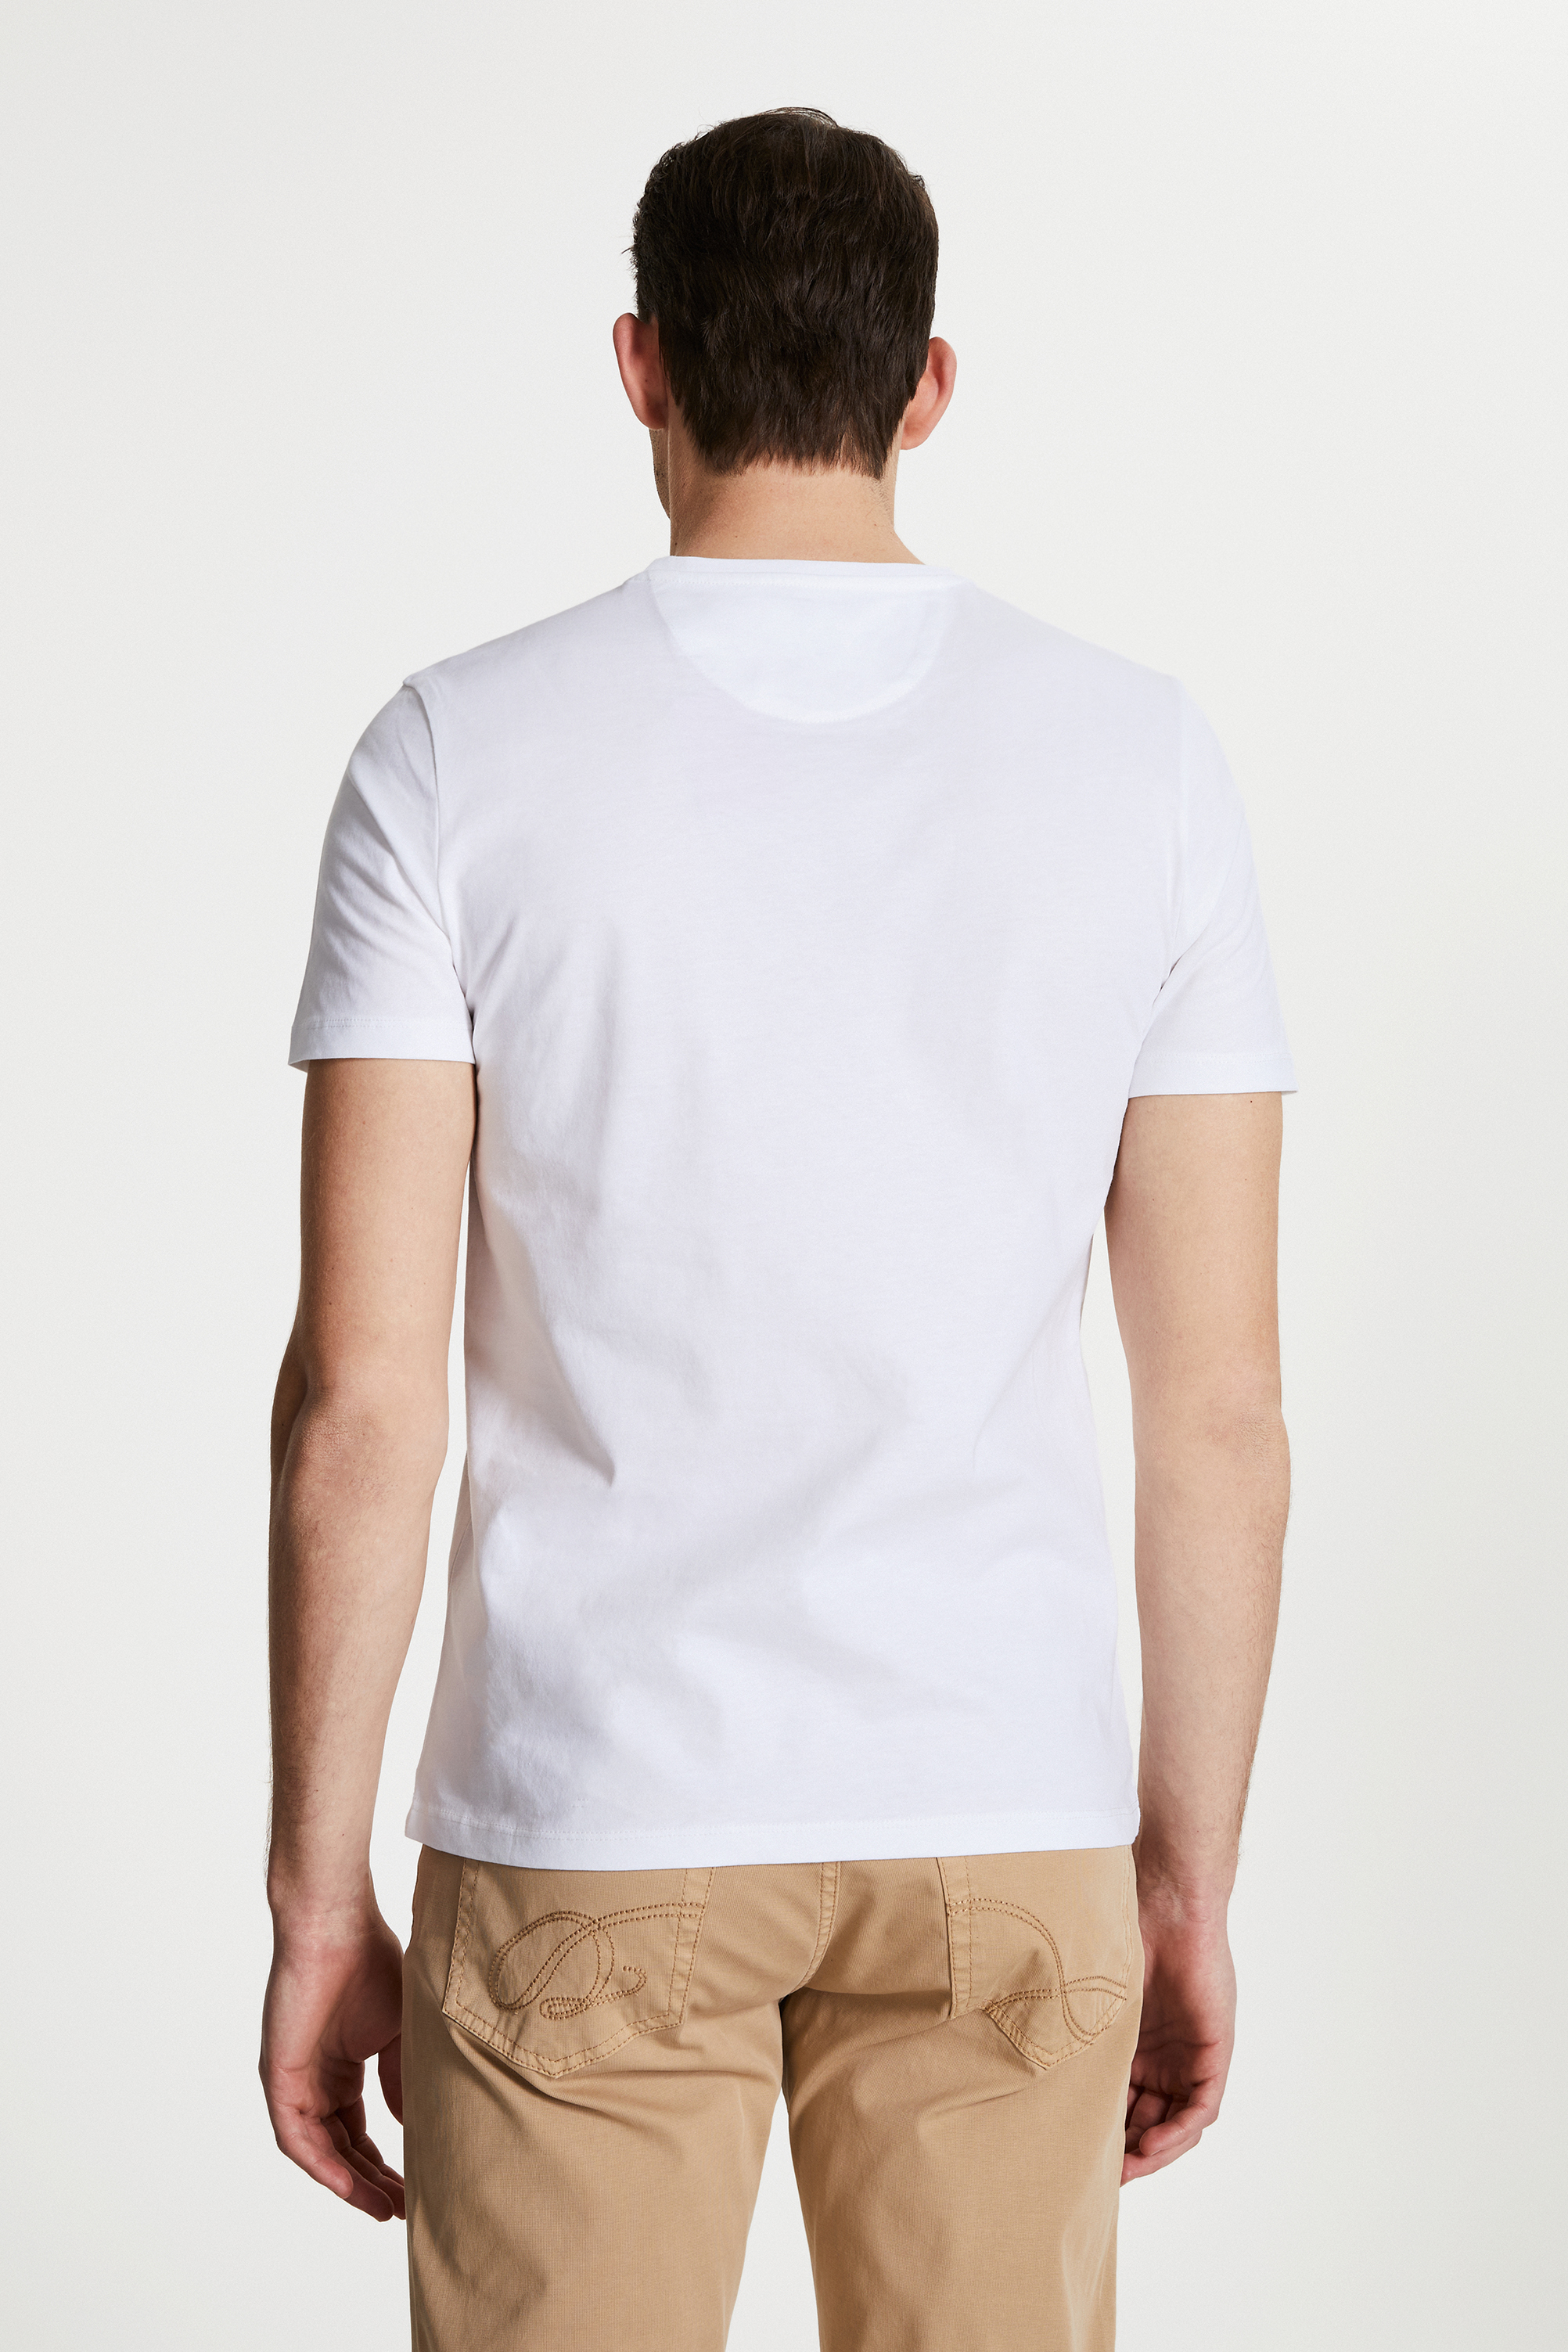 Damat Tween Damat Beyaz Çizgili Baskılı T-shirt. 4